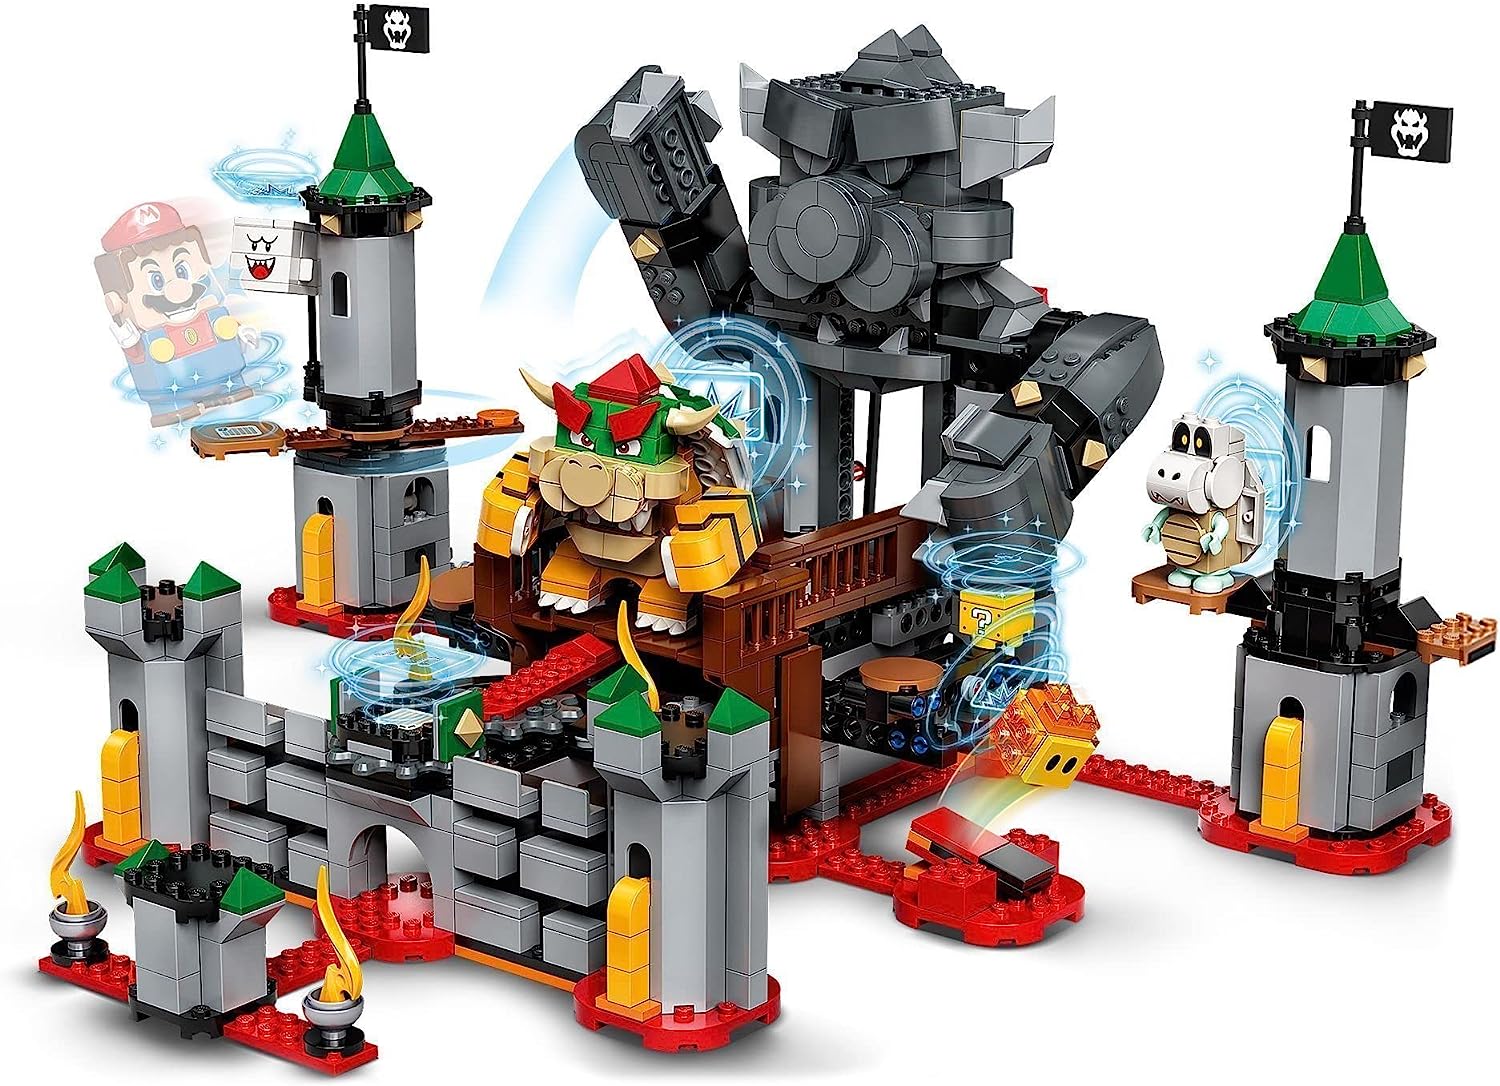 メール便なら送料無料 レゴ Lego Super Mario Bowser S Castle Boss Battle Expansion Set Buildable Game レゴ Angelica 激安単価で Neostudio Ge